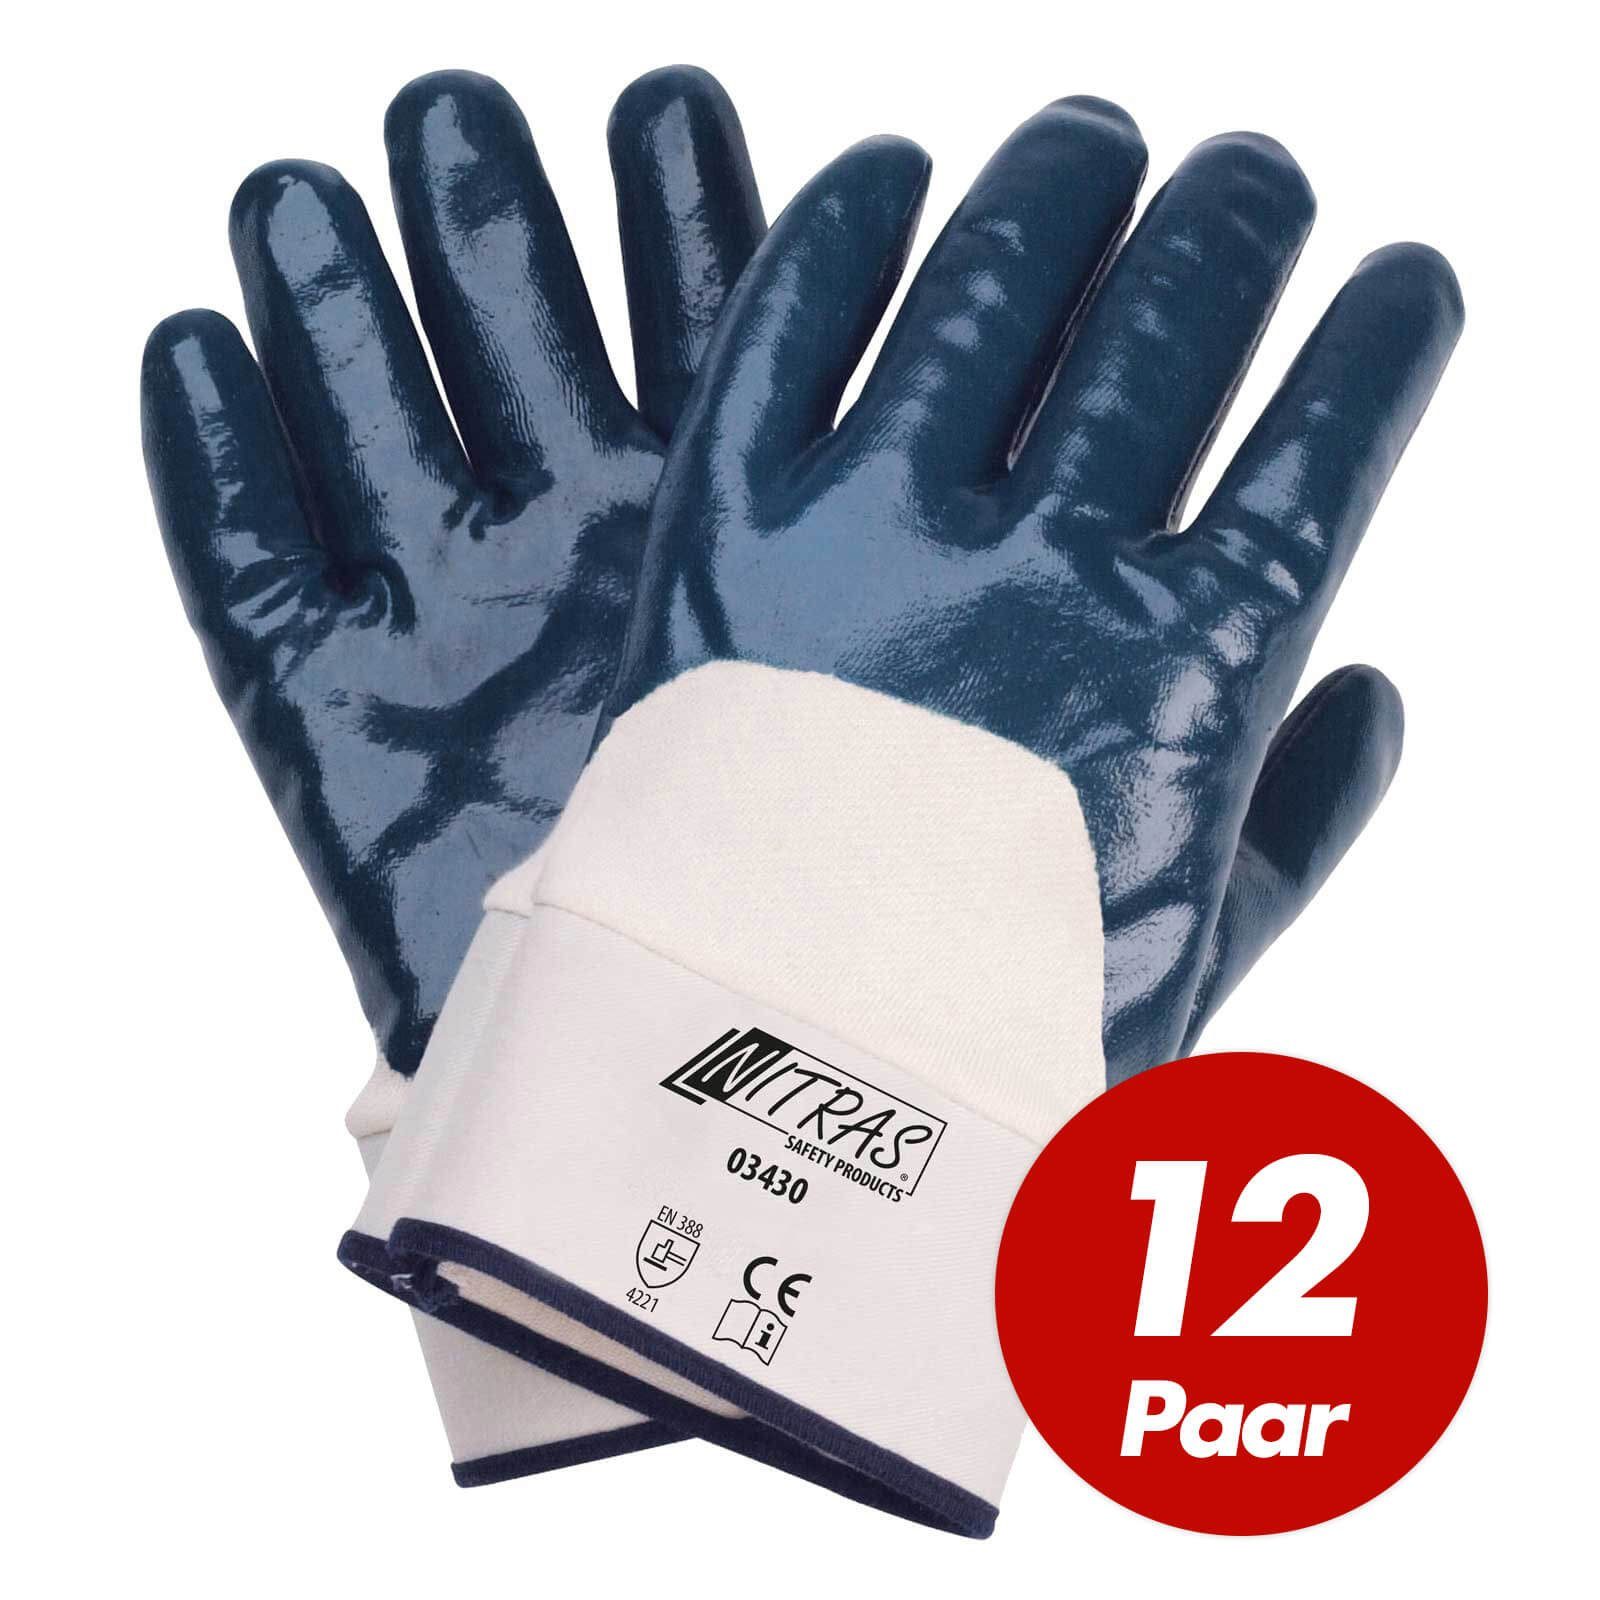 NITRAS Beschichtung 3/4 12 Nitril-Handschuhe Nitrilhandschuhe - 03430 (Spar-Set) Handschuhe Paar Nitras